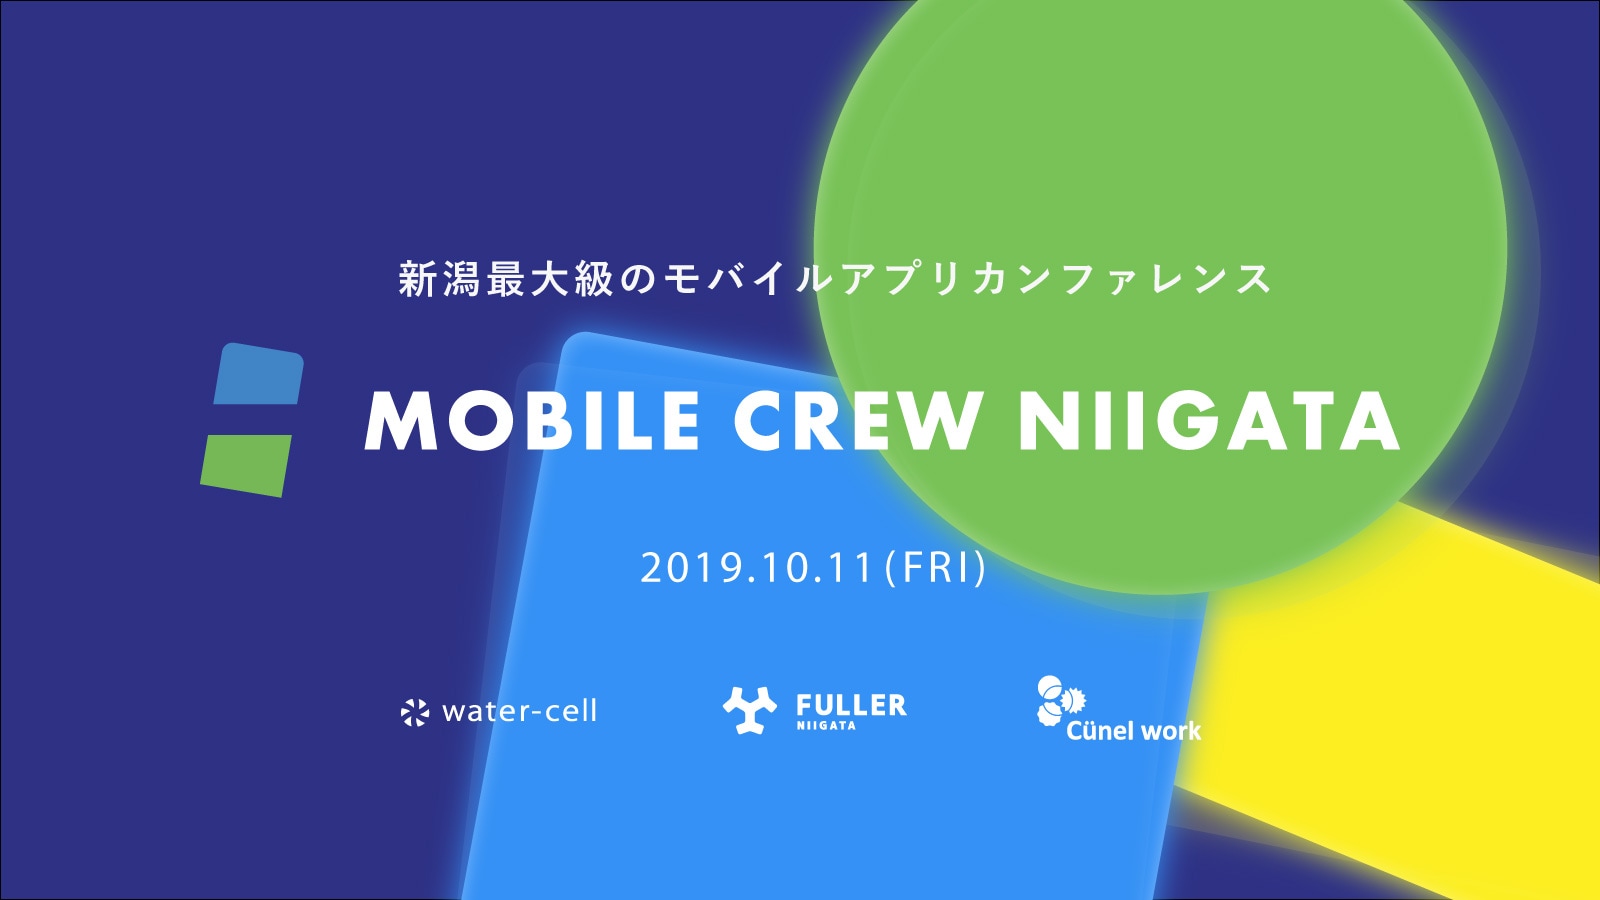 フラー新潟、新潟最大級のモバイルアプリカンファレンス「MOBILE CREW NIIGATA」を主催